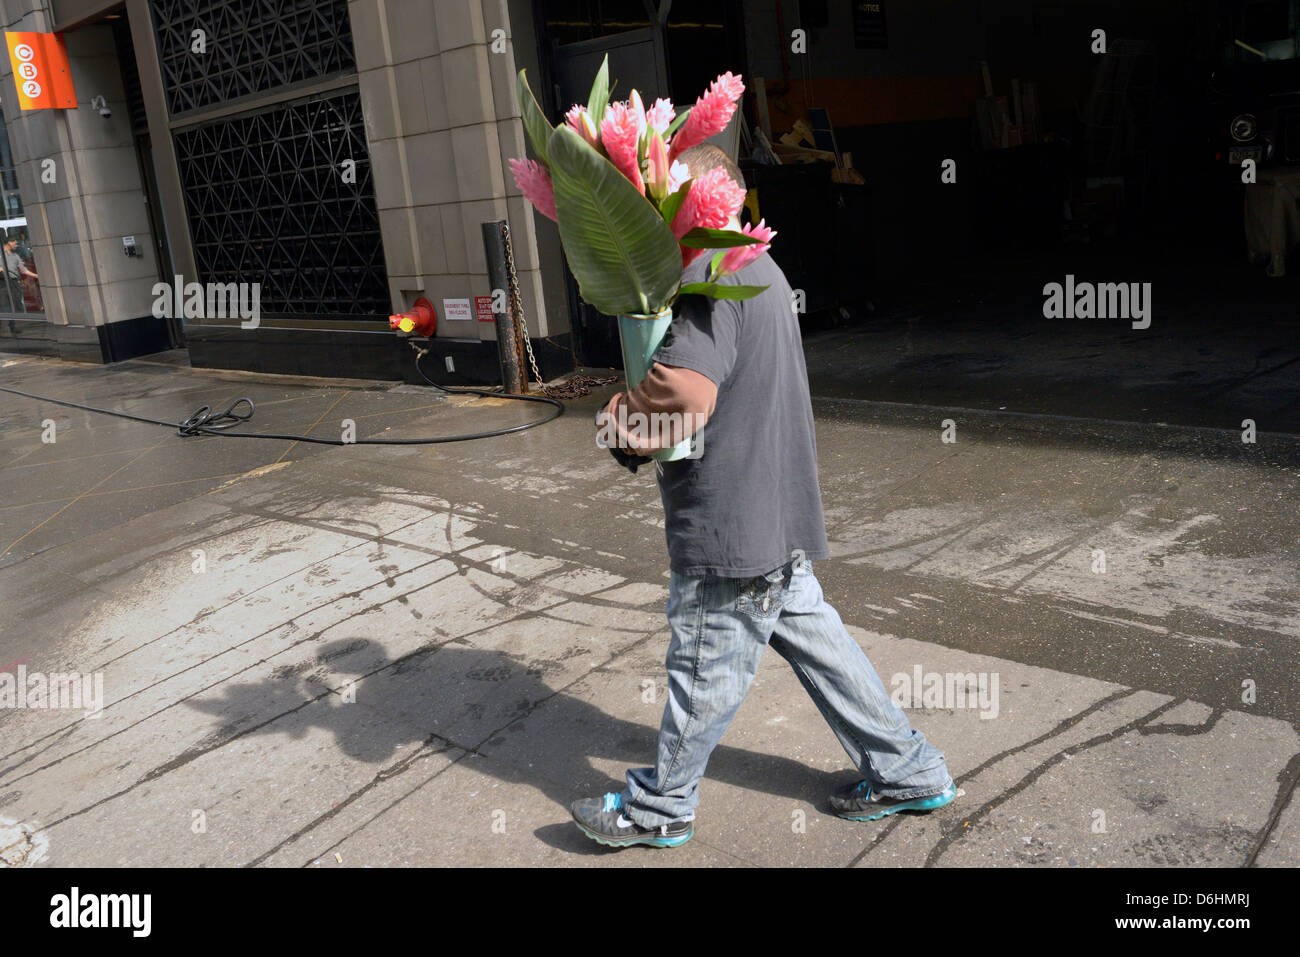 new york flower carrier Stock Photo